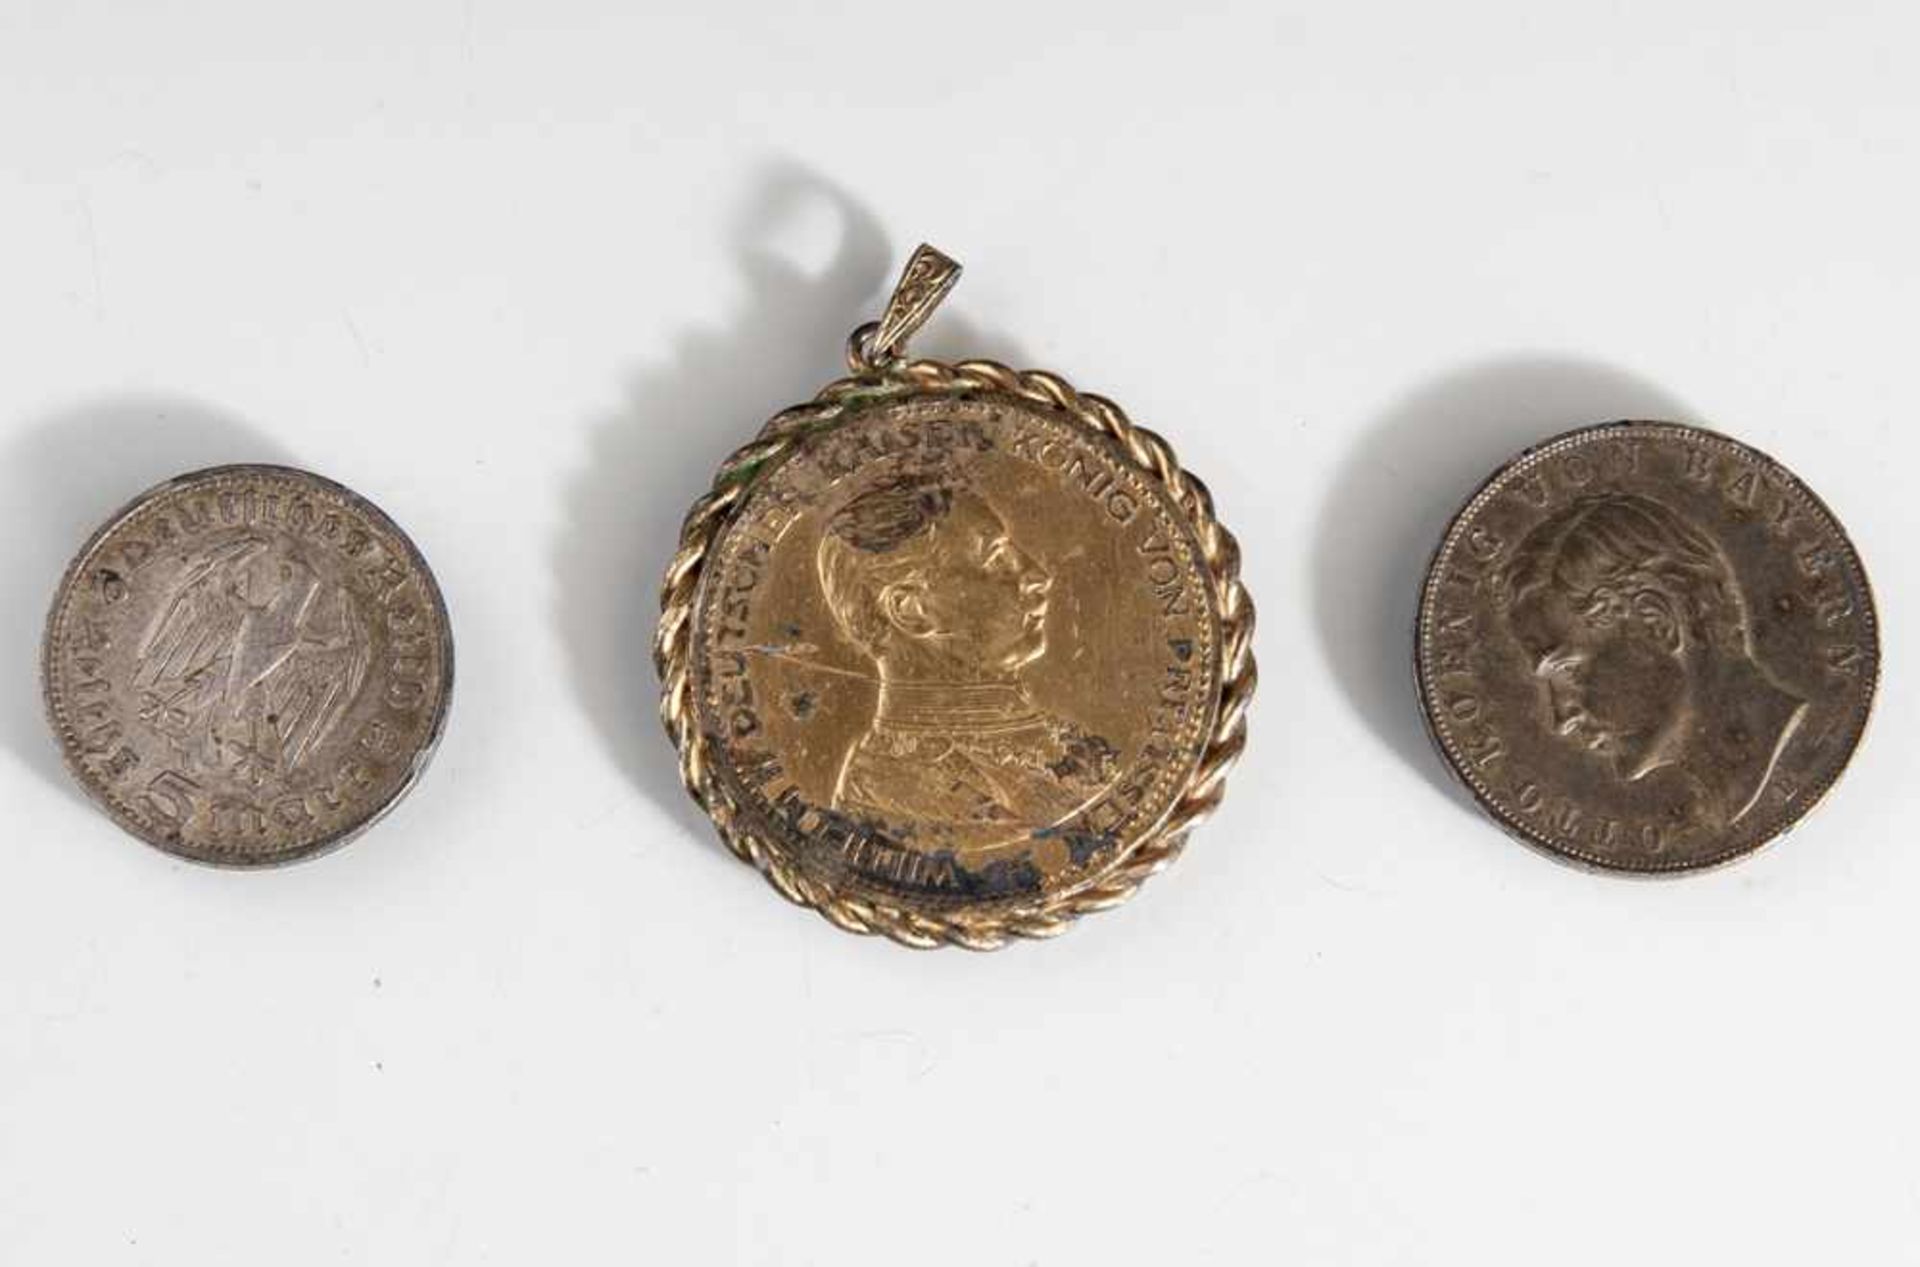 3 Münzen, Drei Mark, Otto König von Bayern 1913, Fünf Mark, Wilhelm II, 1913, 5 Mark, Paul von